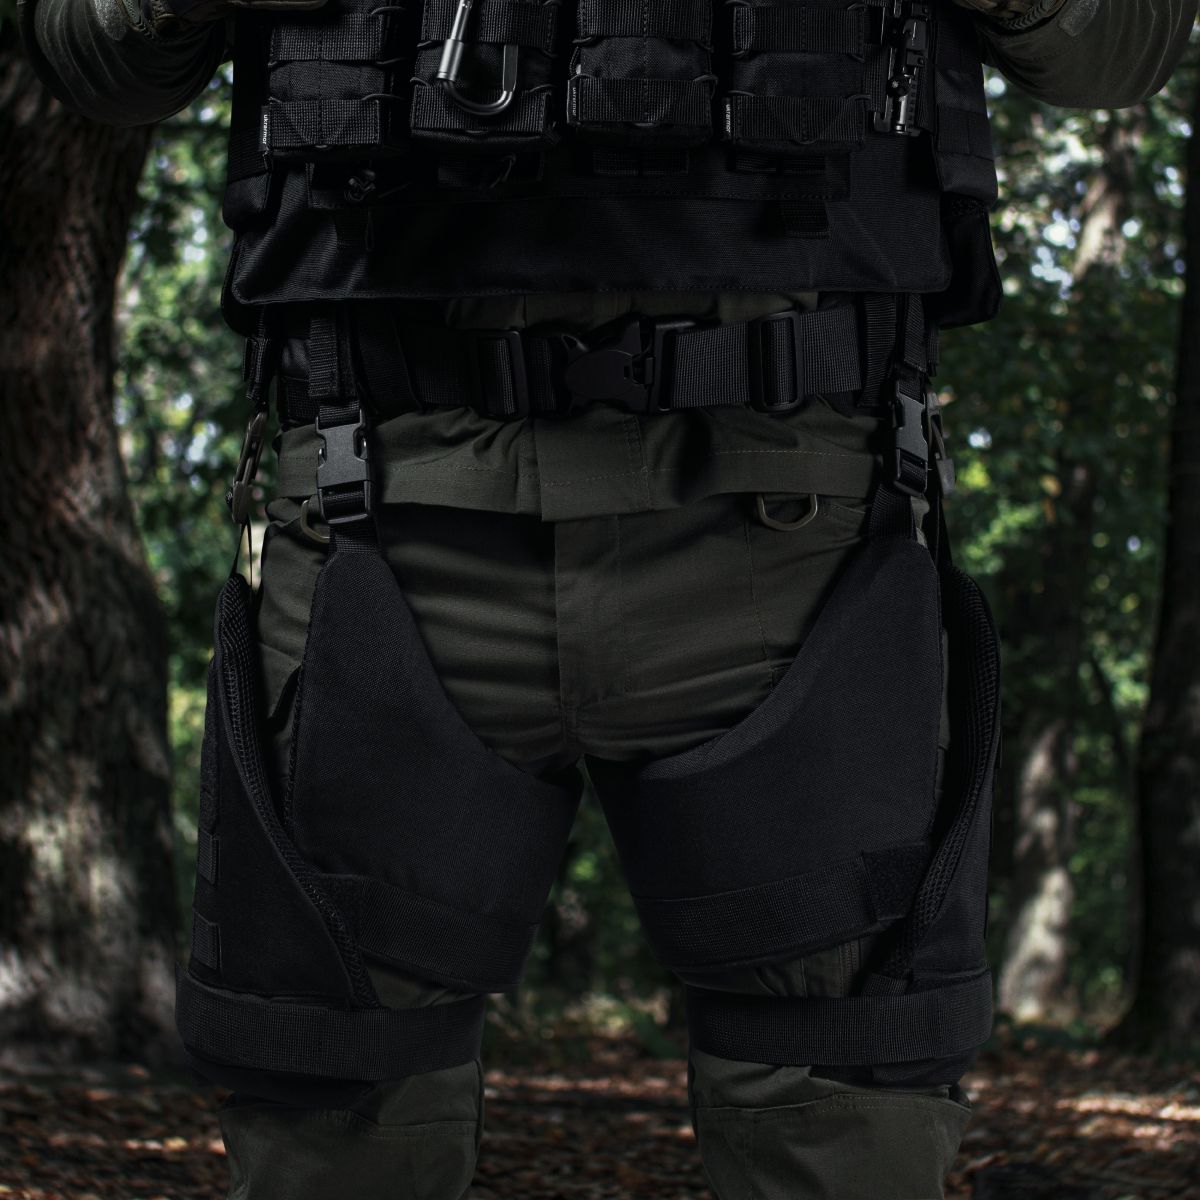 Захист стегон 2-го класу захисту (з балістичним пакетом). Колір чорний 3